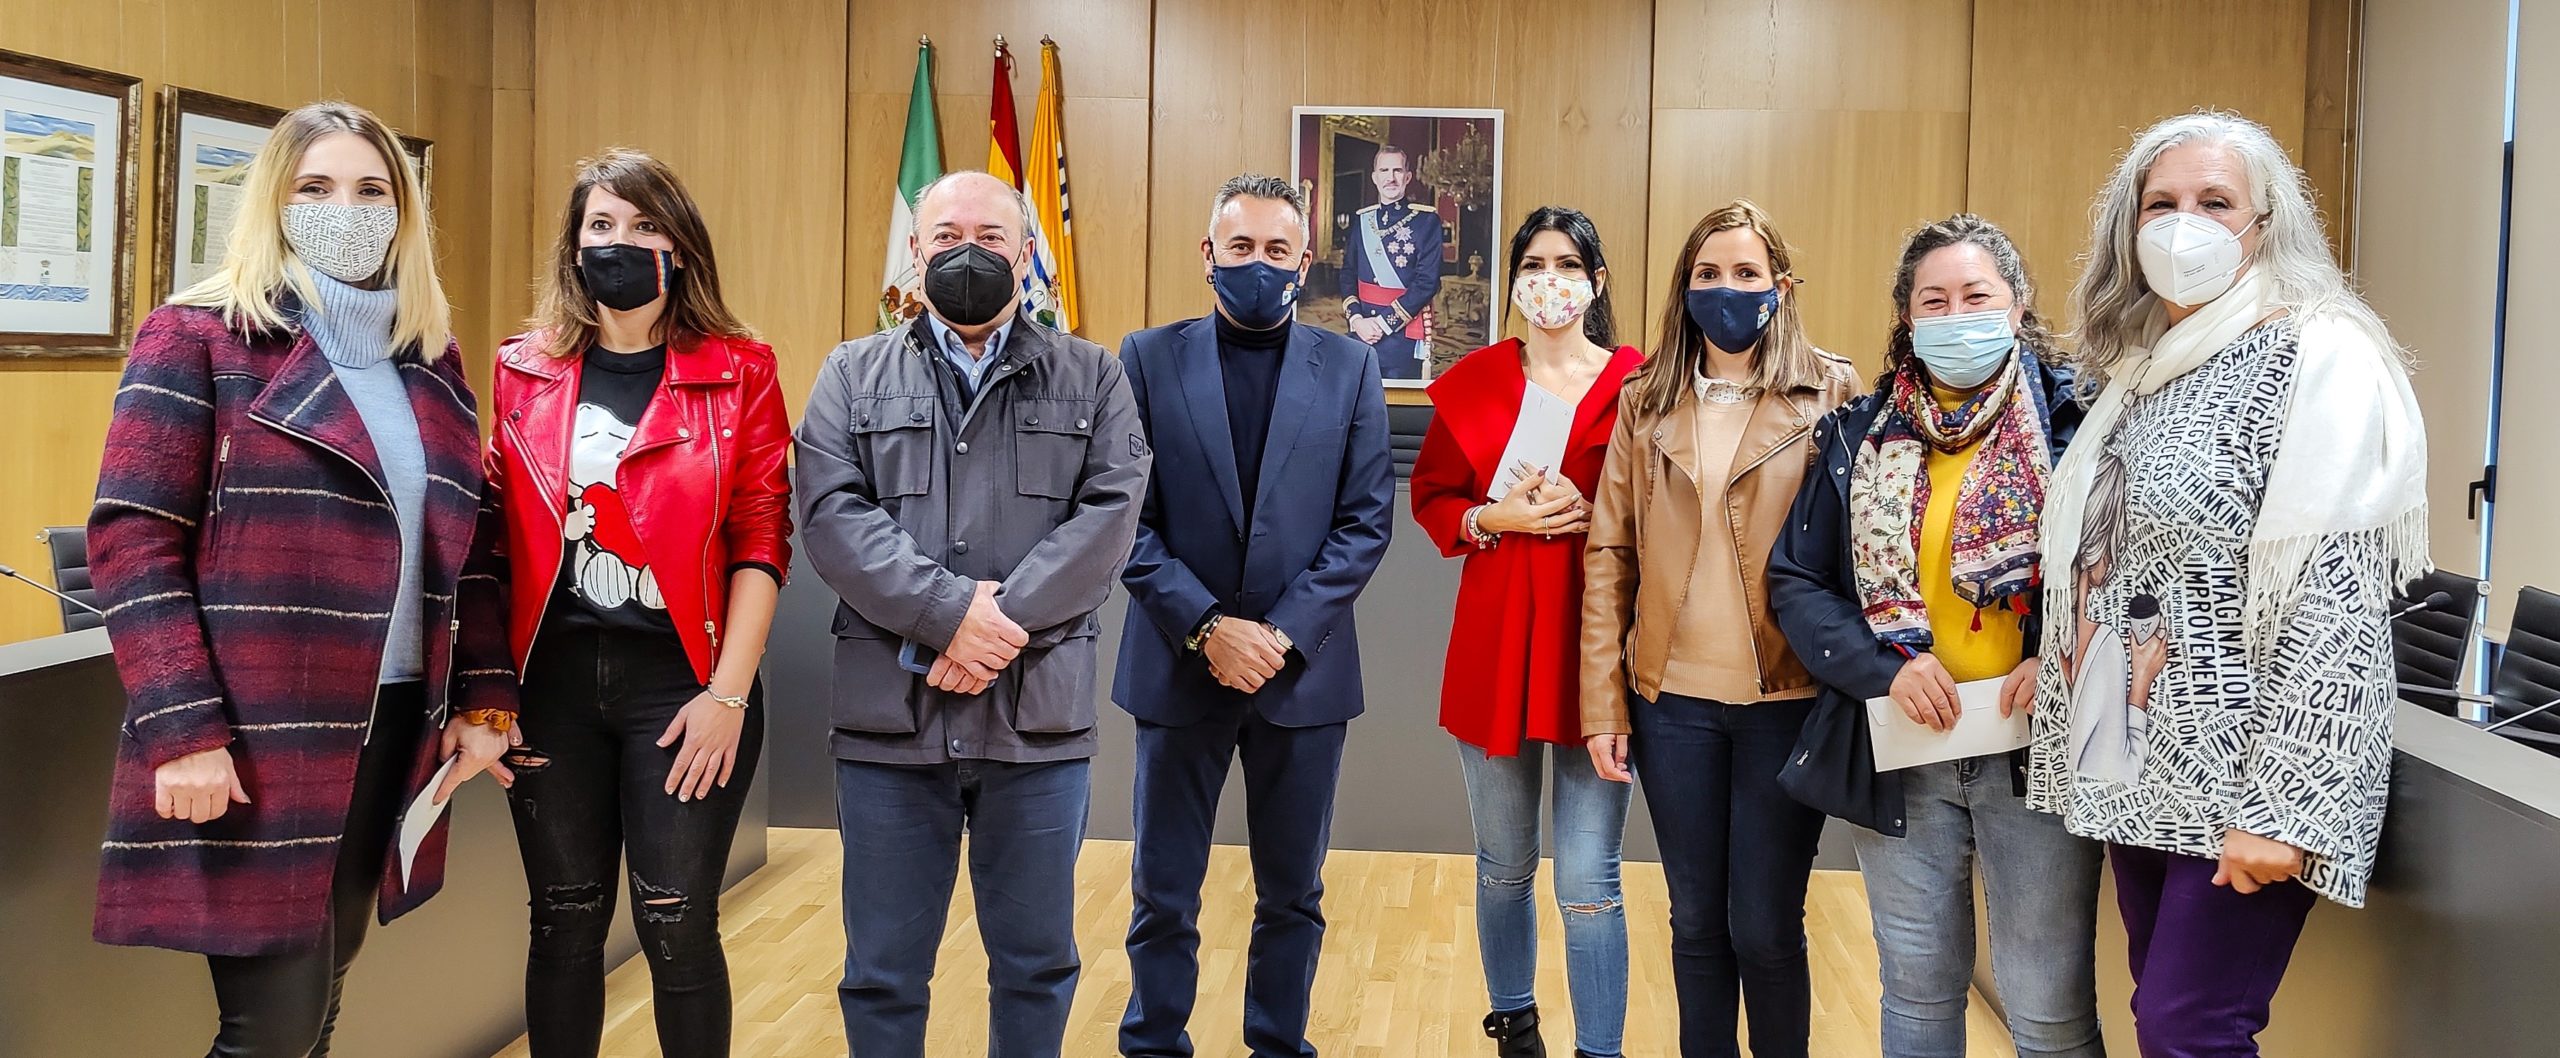 Entregados los premios del I Concurso de Fachadas Navideñas convocado por el Ayuntamiento isleño